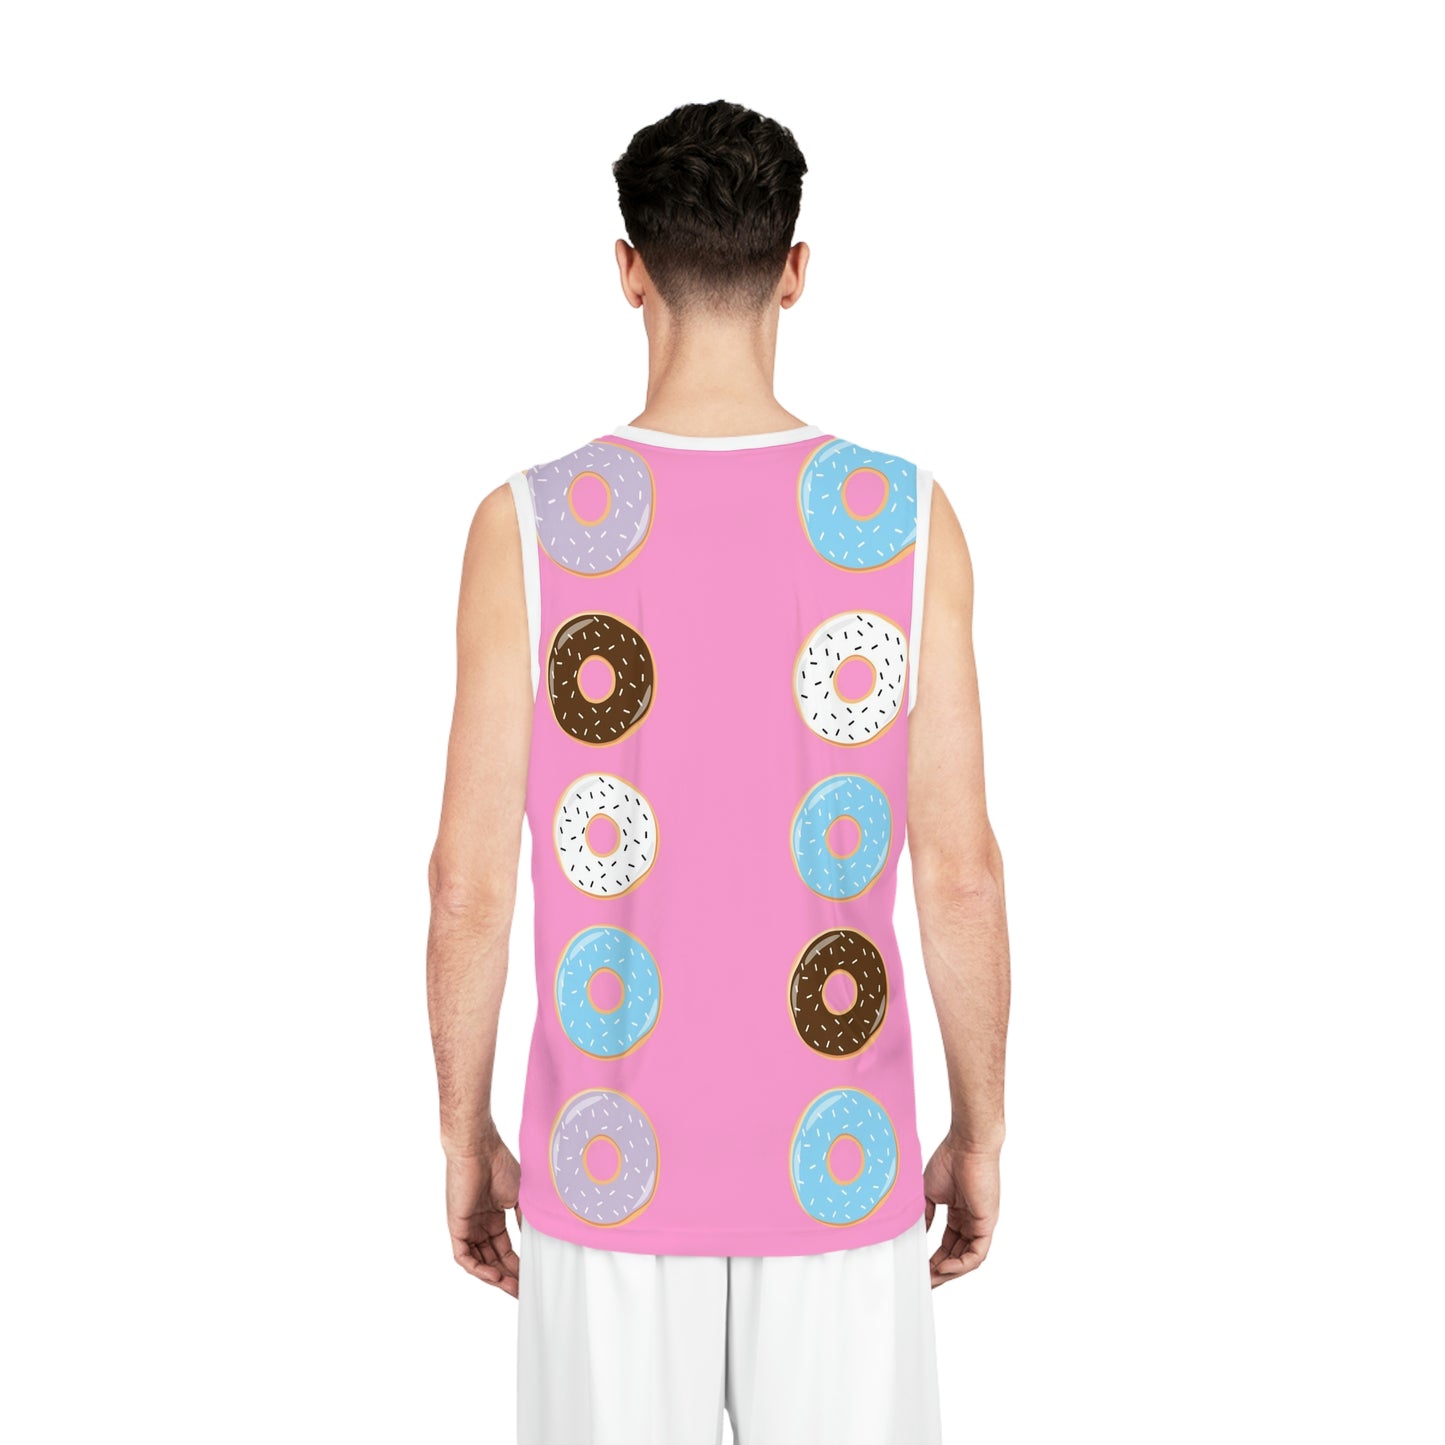 Donut Suit Jersey